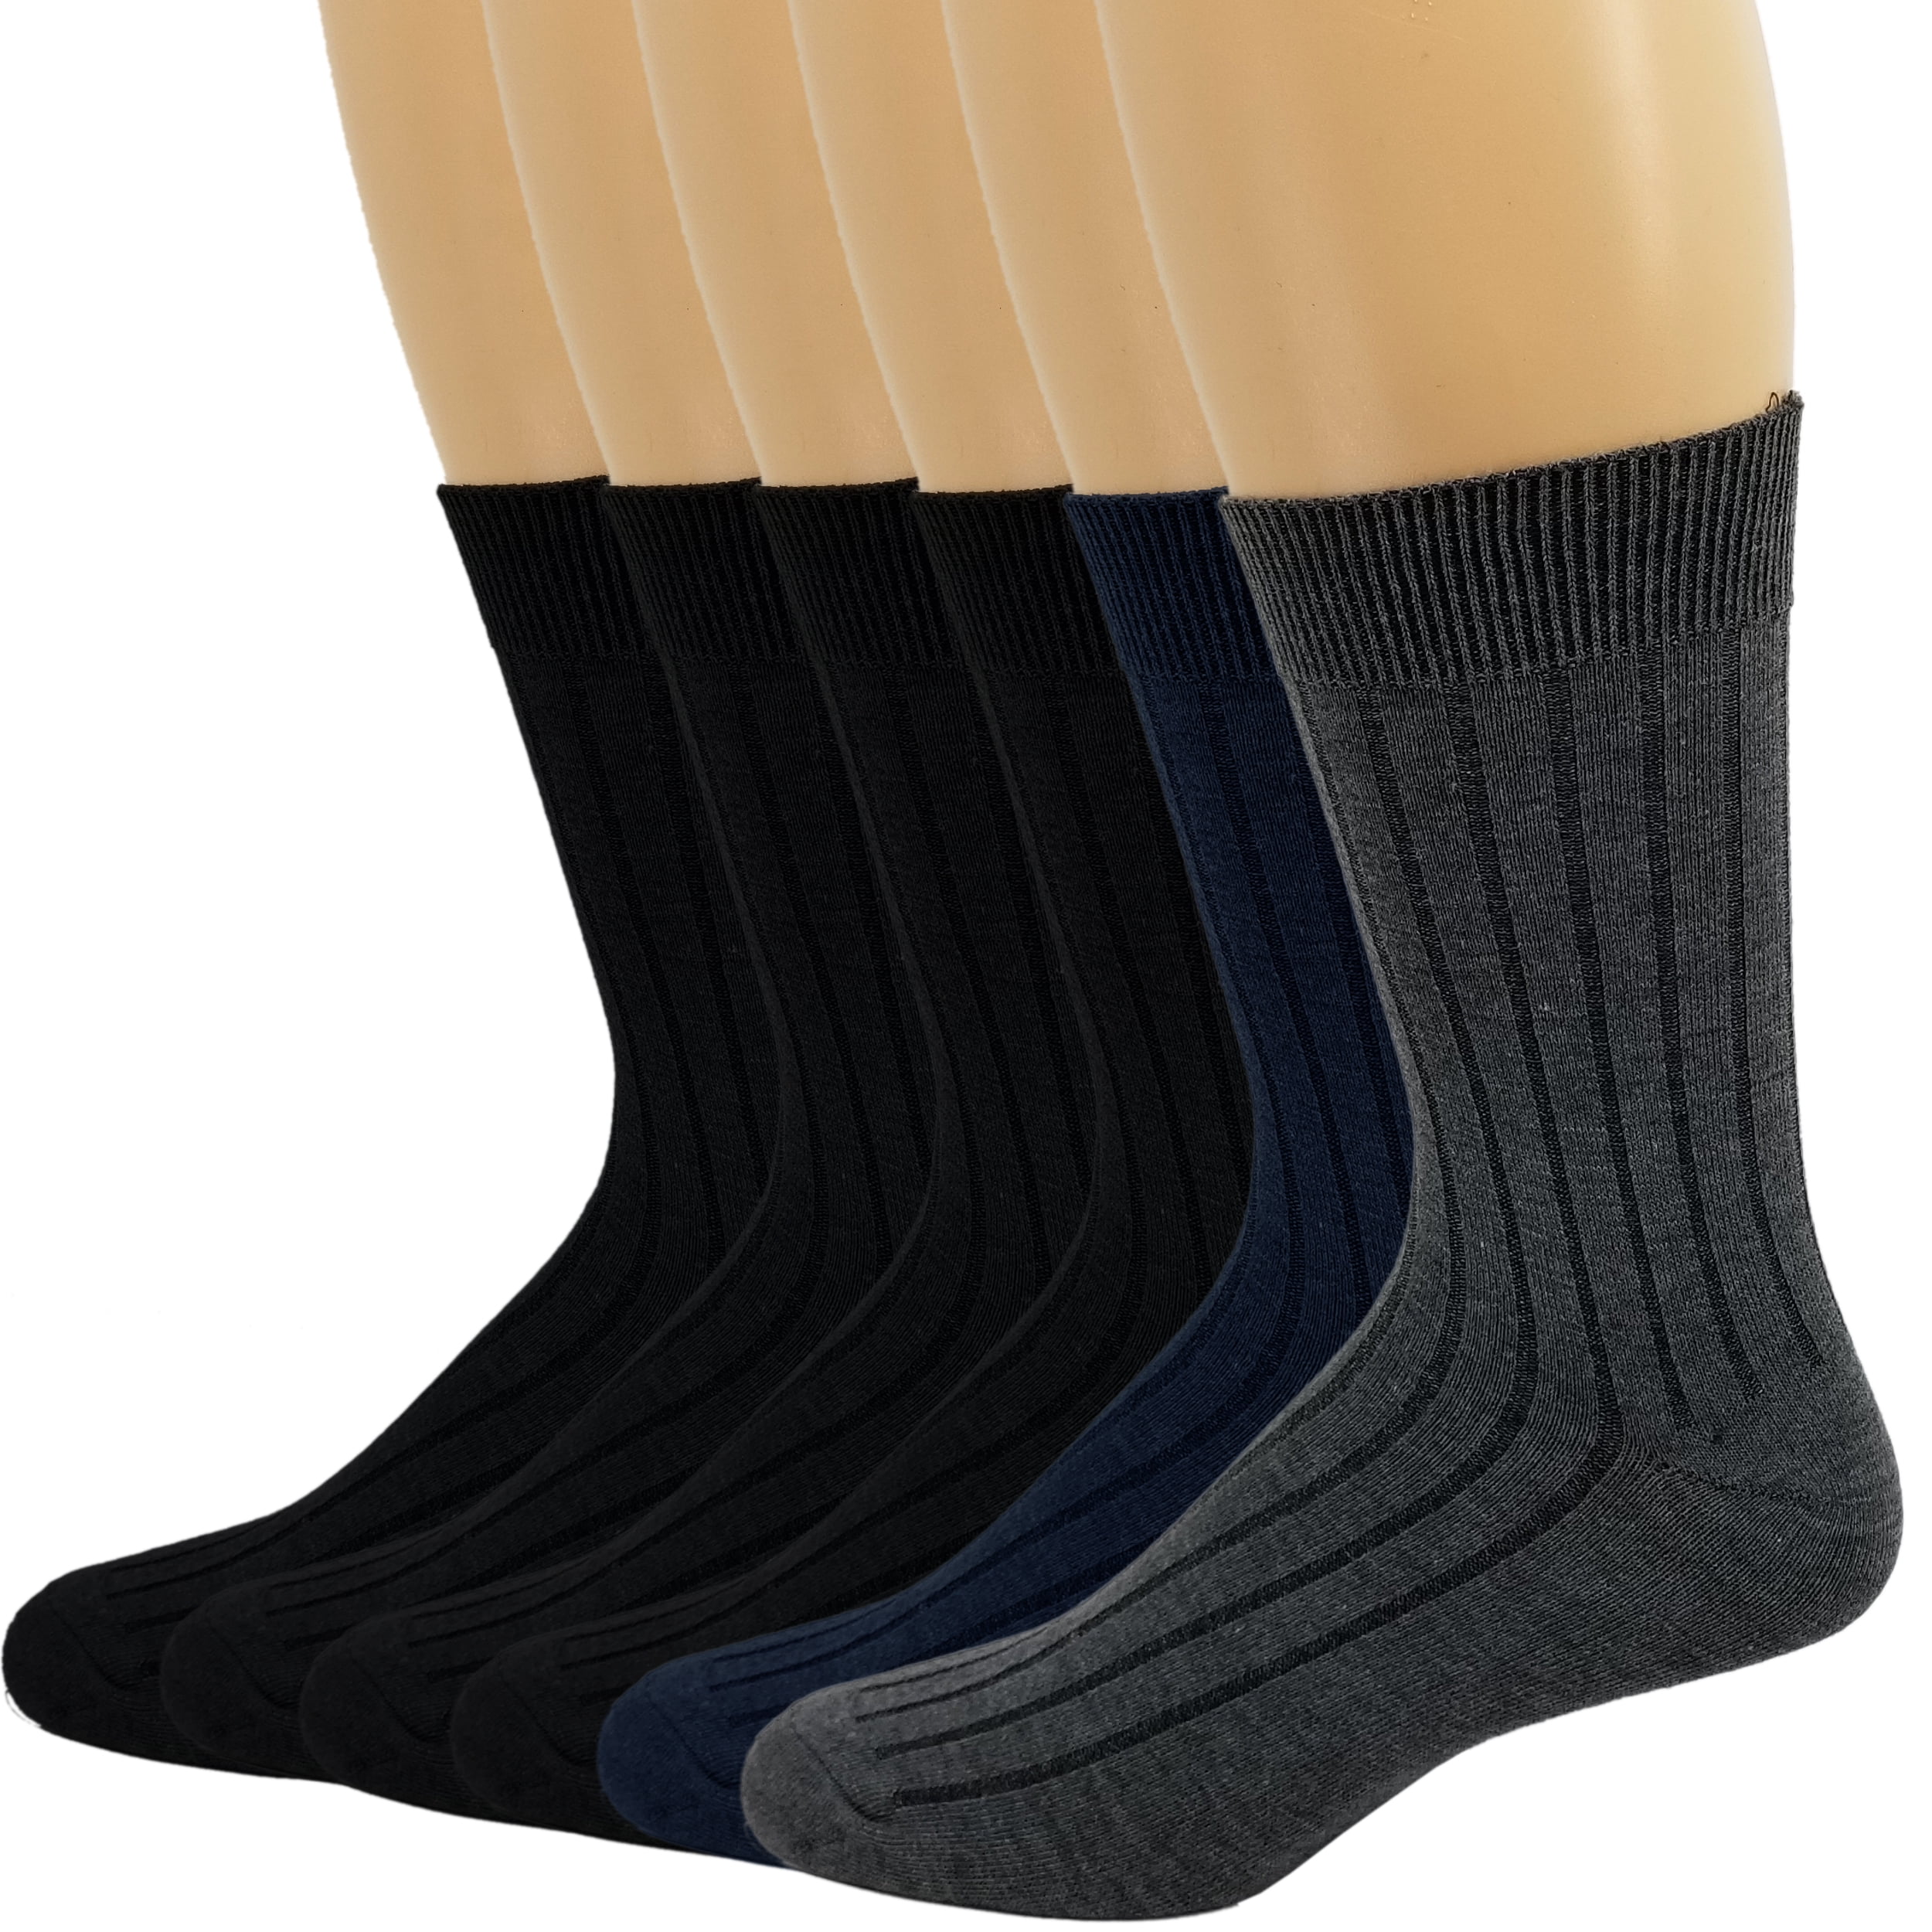 Debra Weitzner Dress Socks for Men Ribbed Style Crew Socks Cotton 6 ...